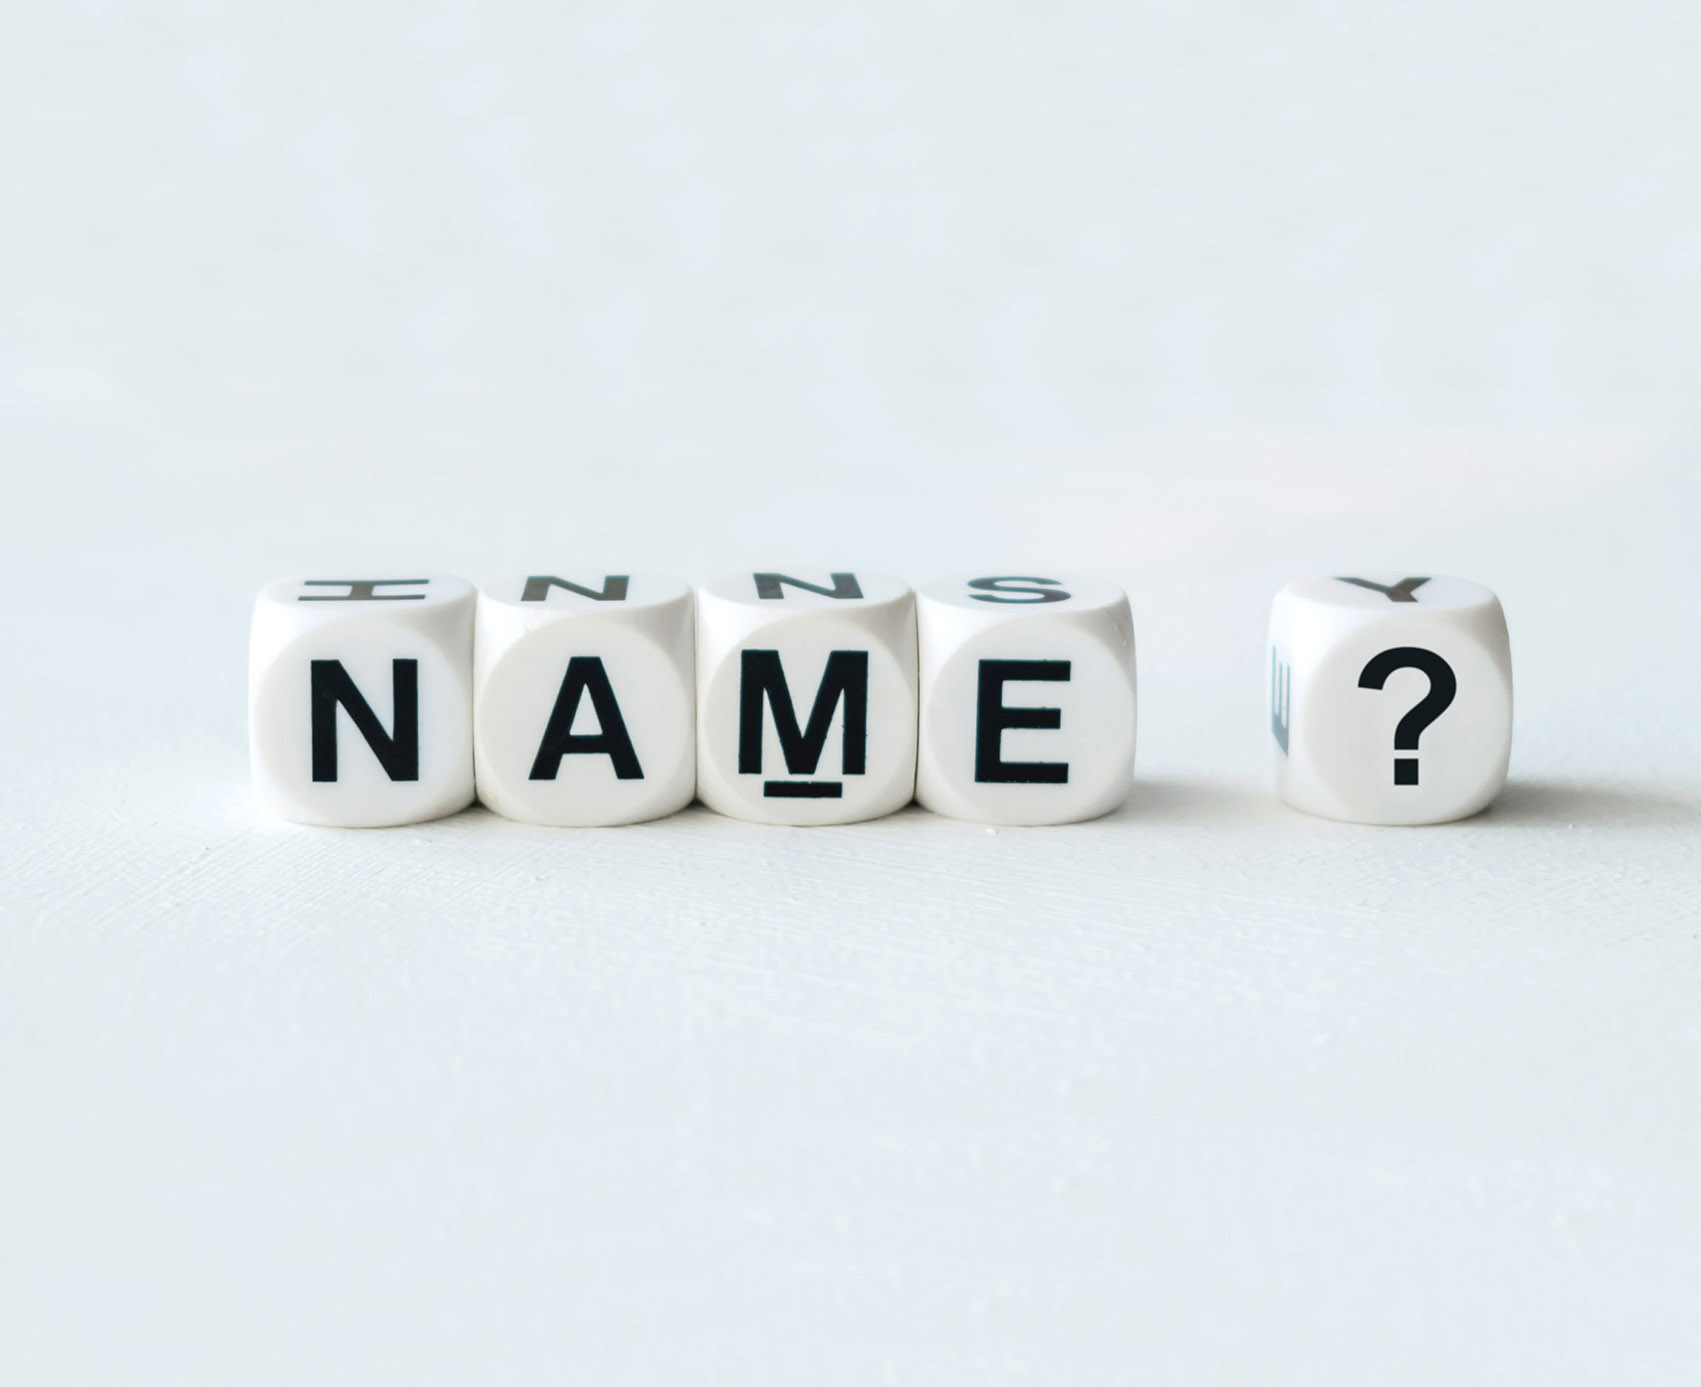 dadi con lettere che compongono la parola "name"